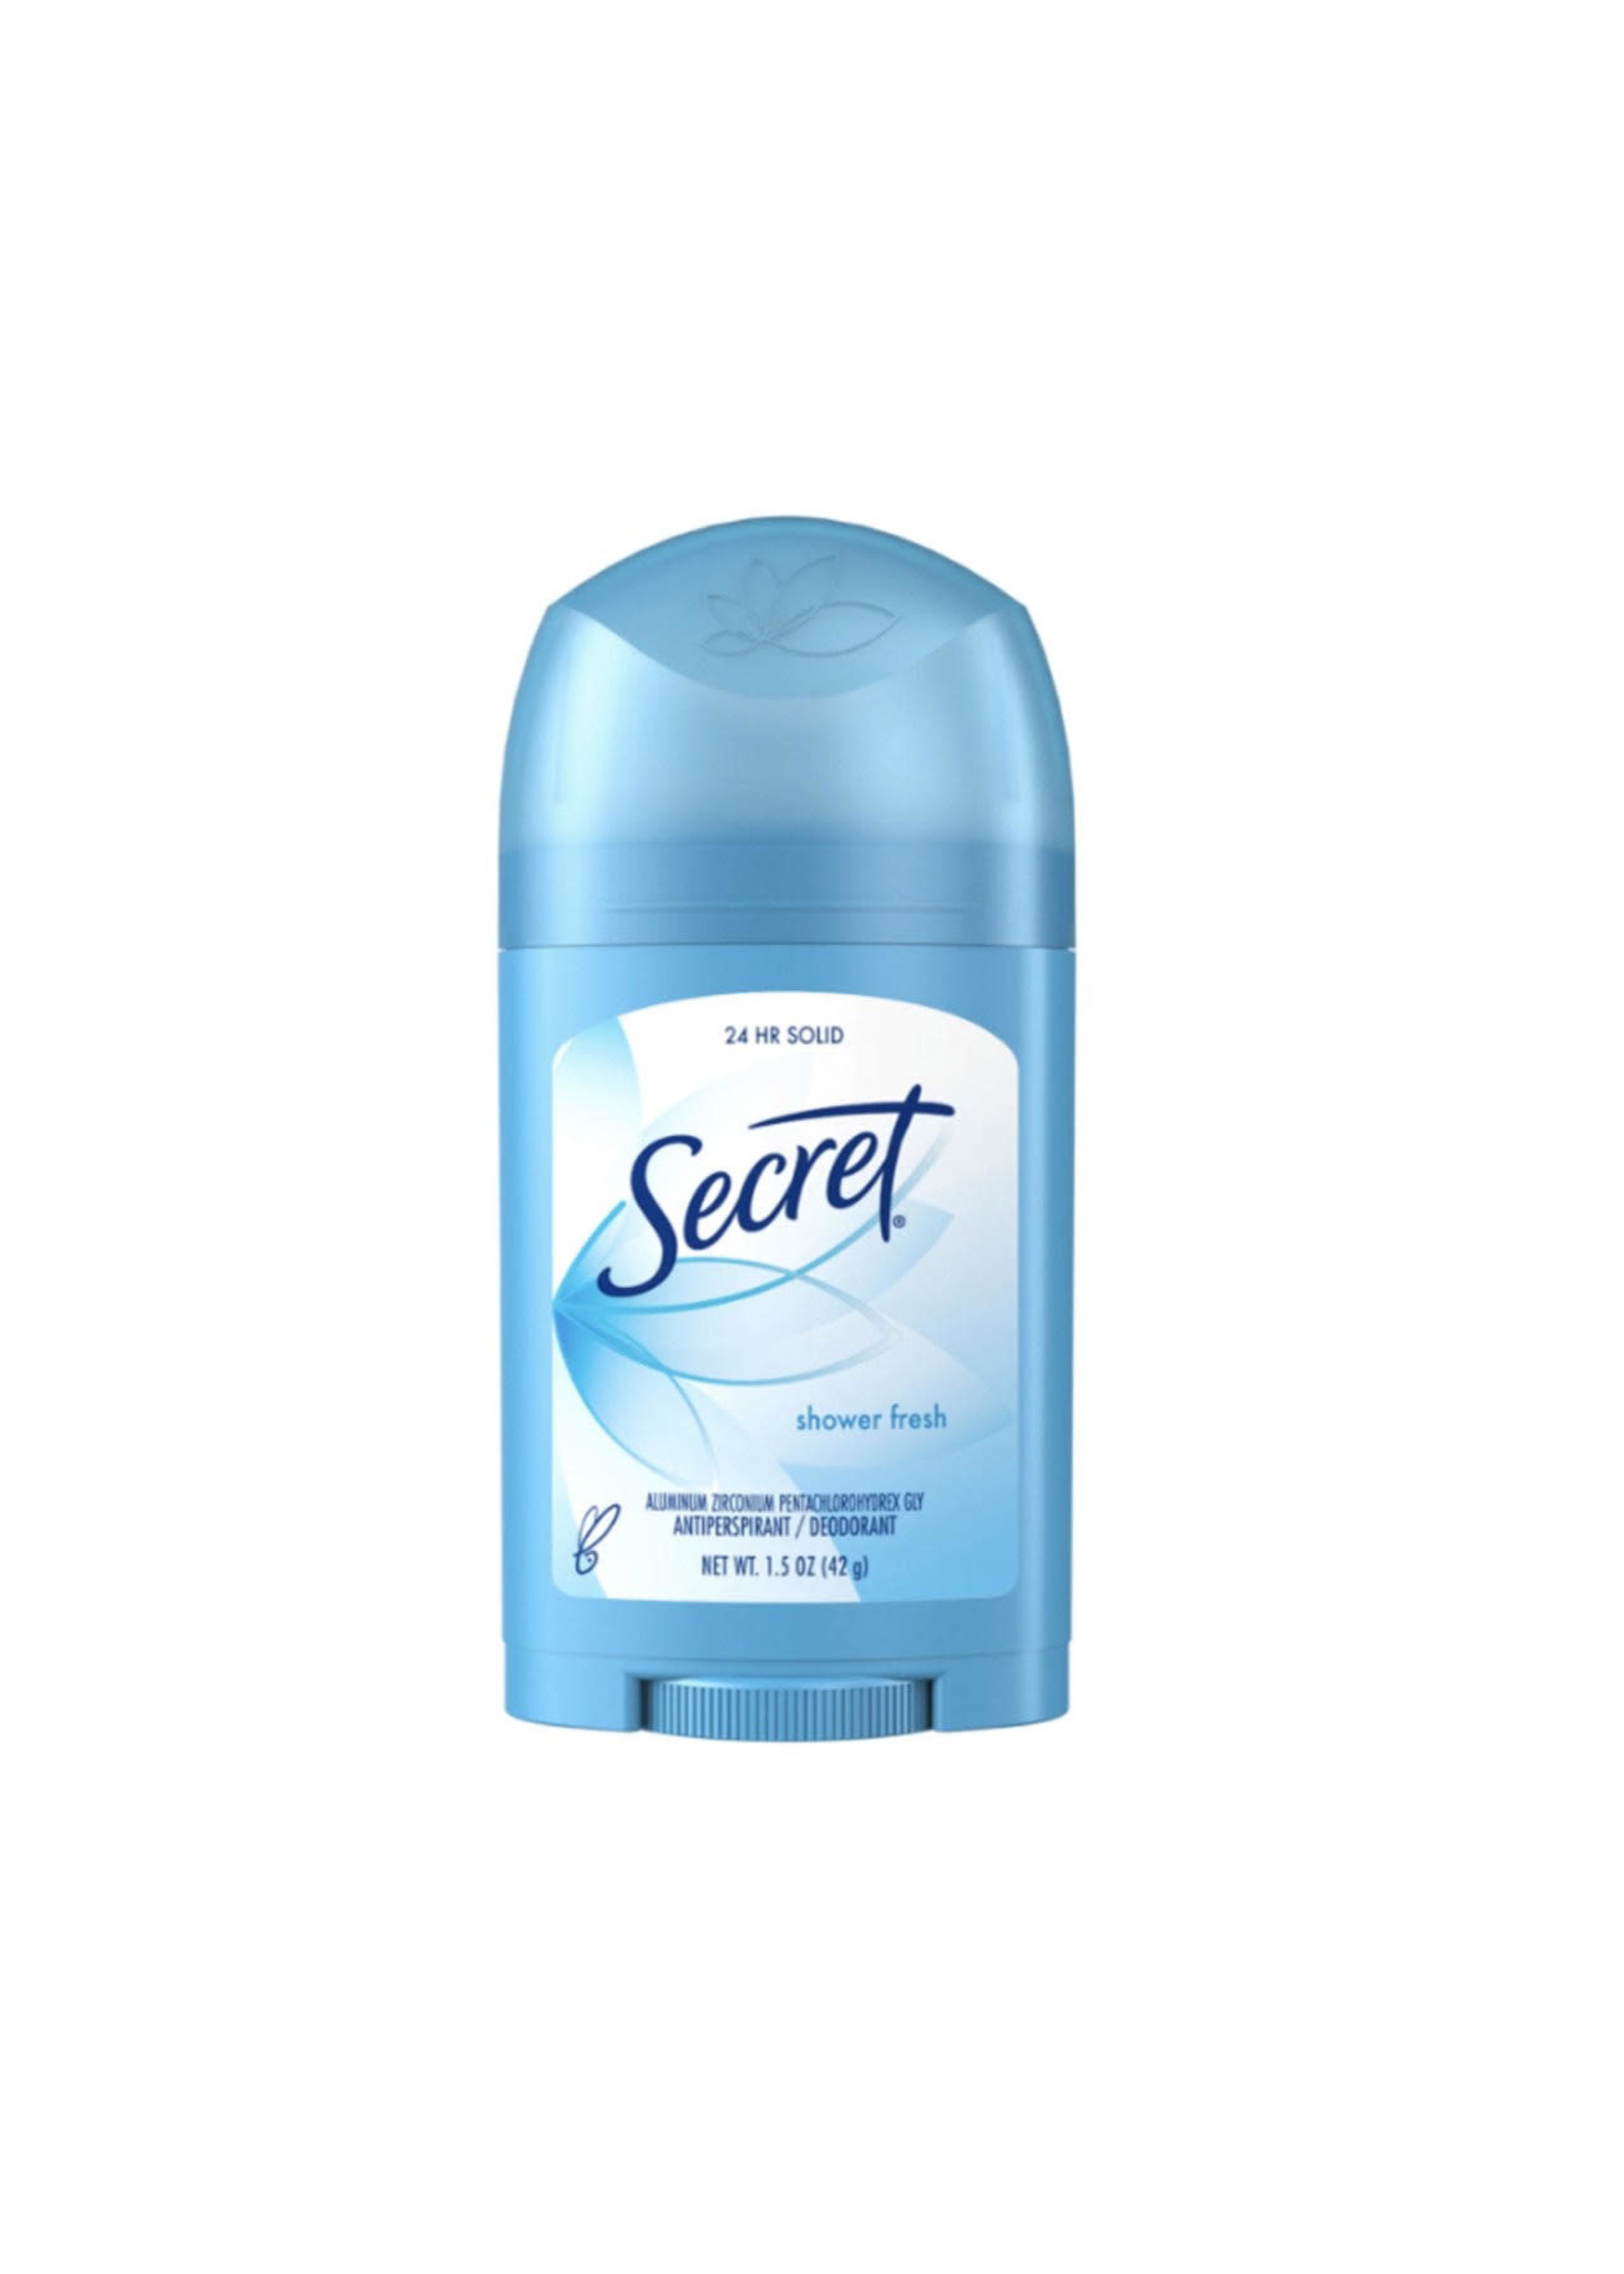 Secret Shower Fresh Antiperspirant, 1.5oz - 12/case ($16.68)